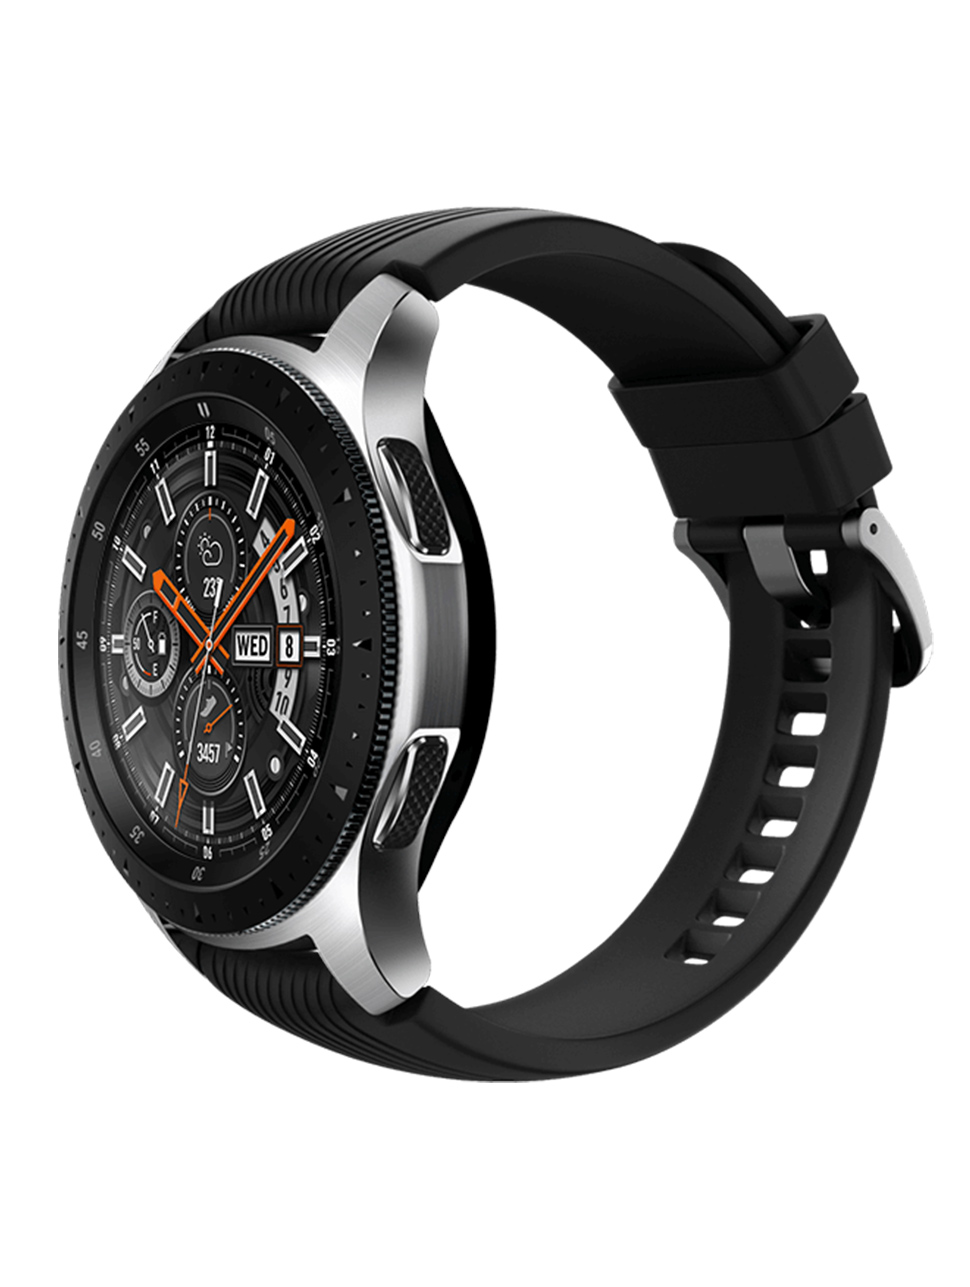 Samsung watch r800. Samsung Galaxy watch 46mm. Samsung Galaxy watch 46 mm Black. Galaxy watch 46mm SM-r800. Samsung Galaxy watch r800.